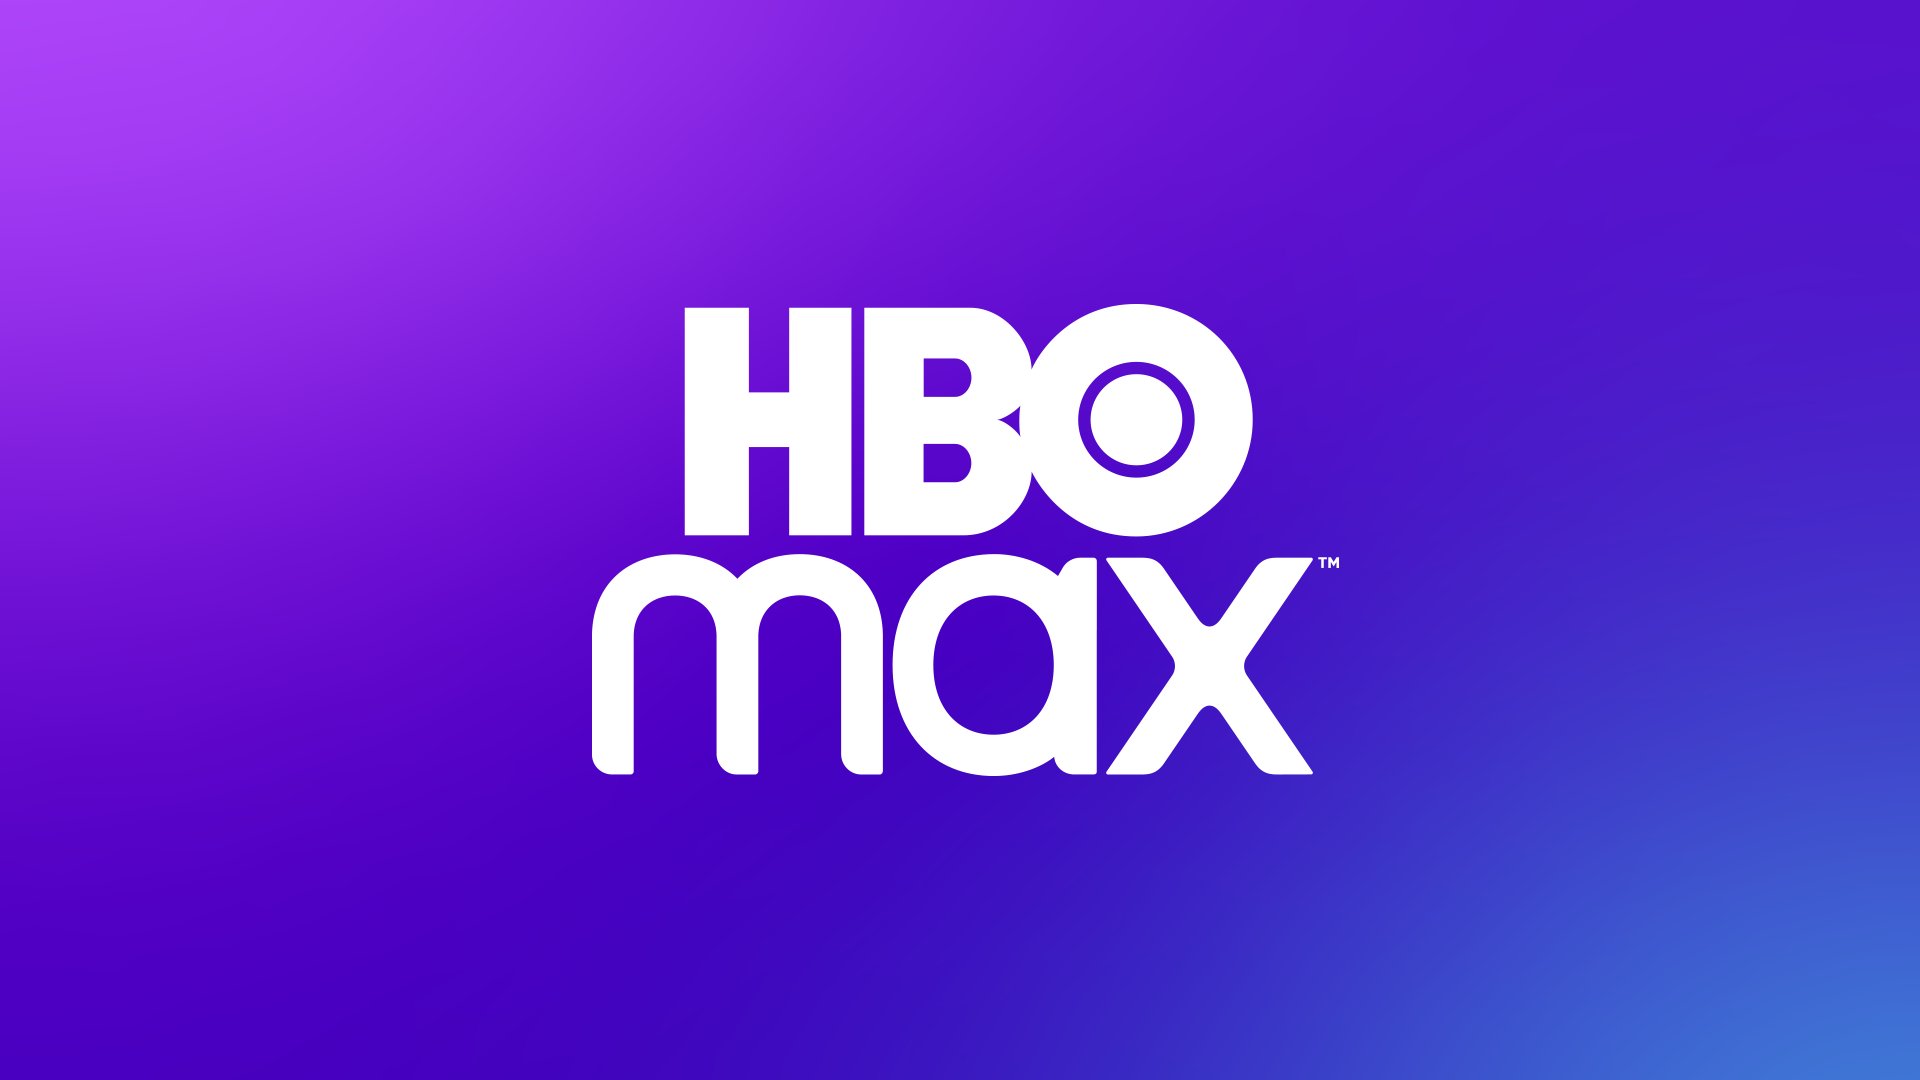 Mercado Livre diminui desconto da mensalidade da HBO Max; veja